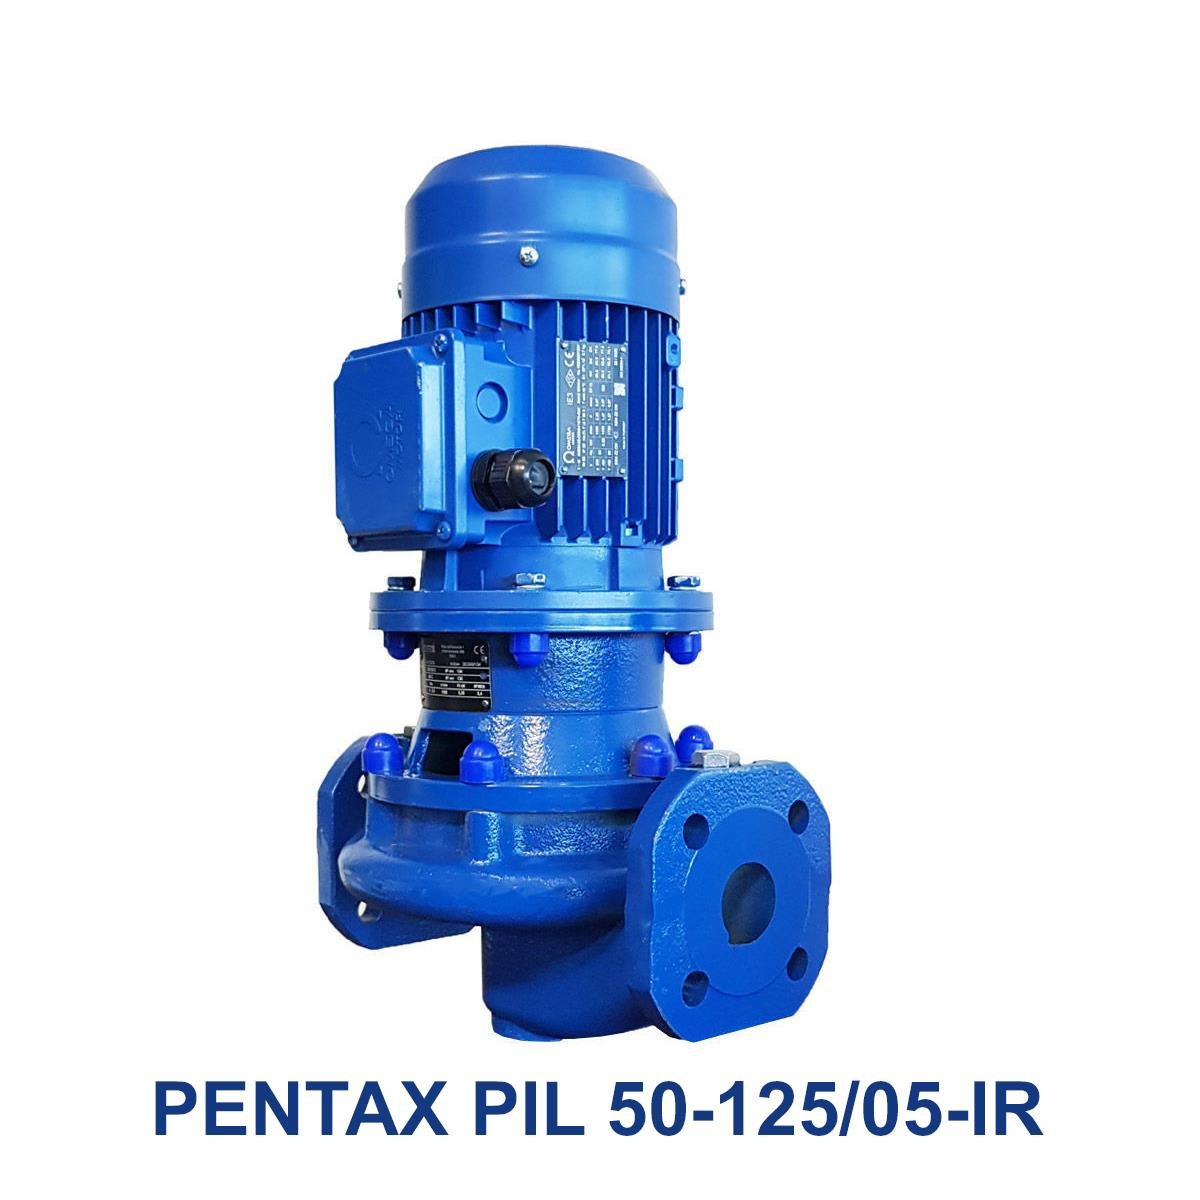 PENTAX-PIL-50-125-05-IR